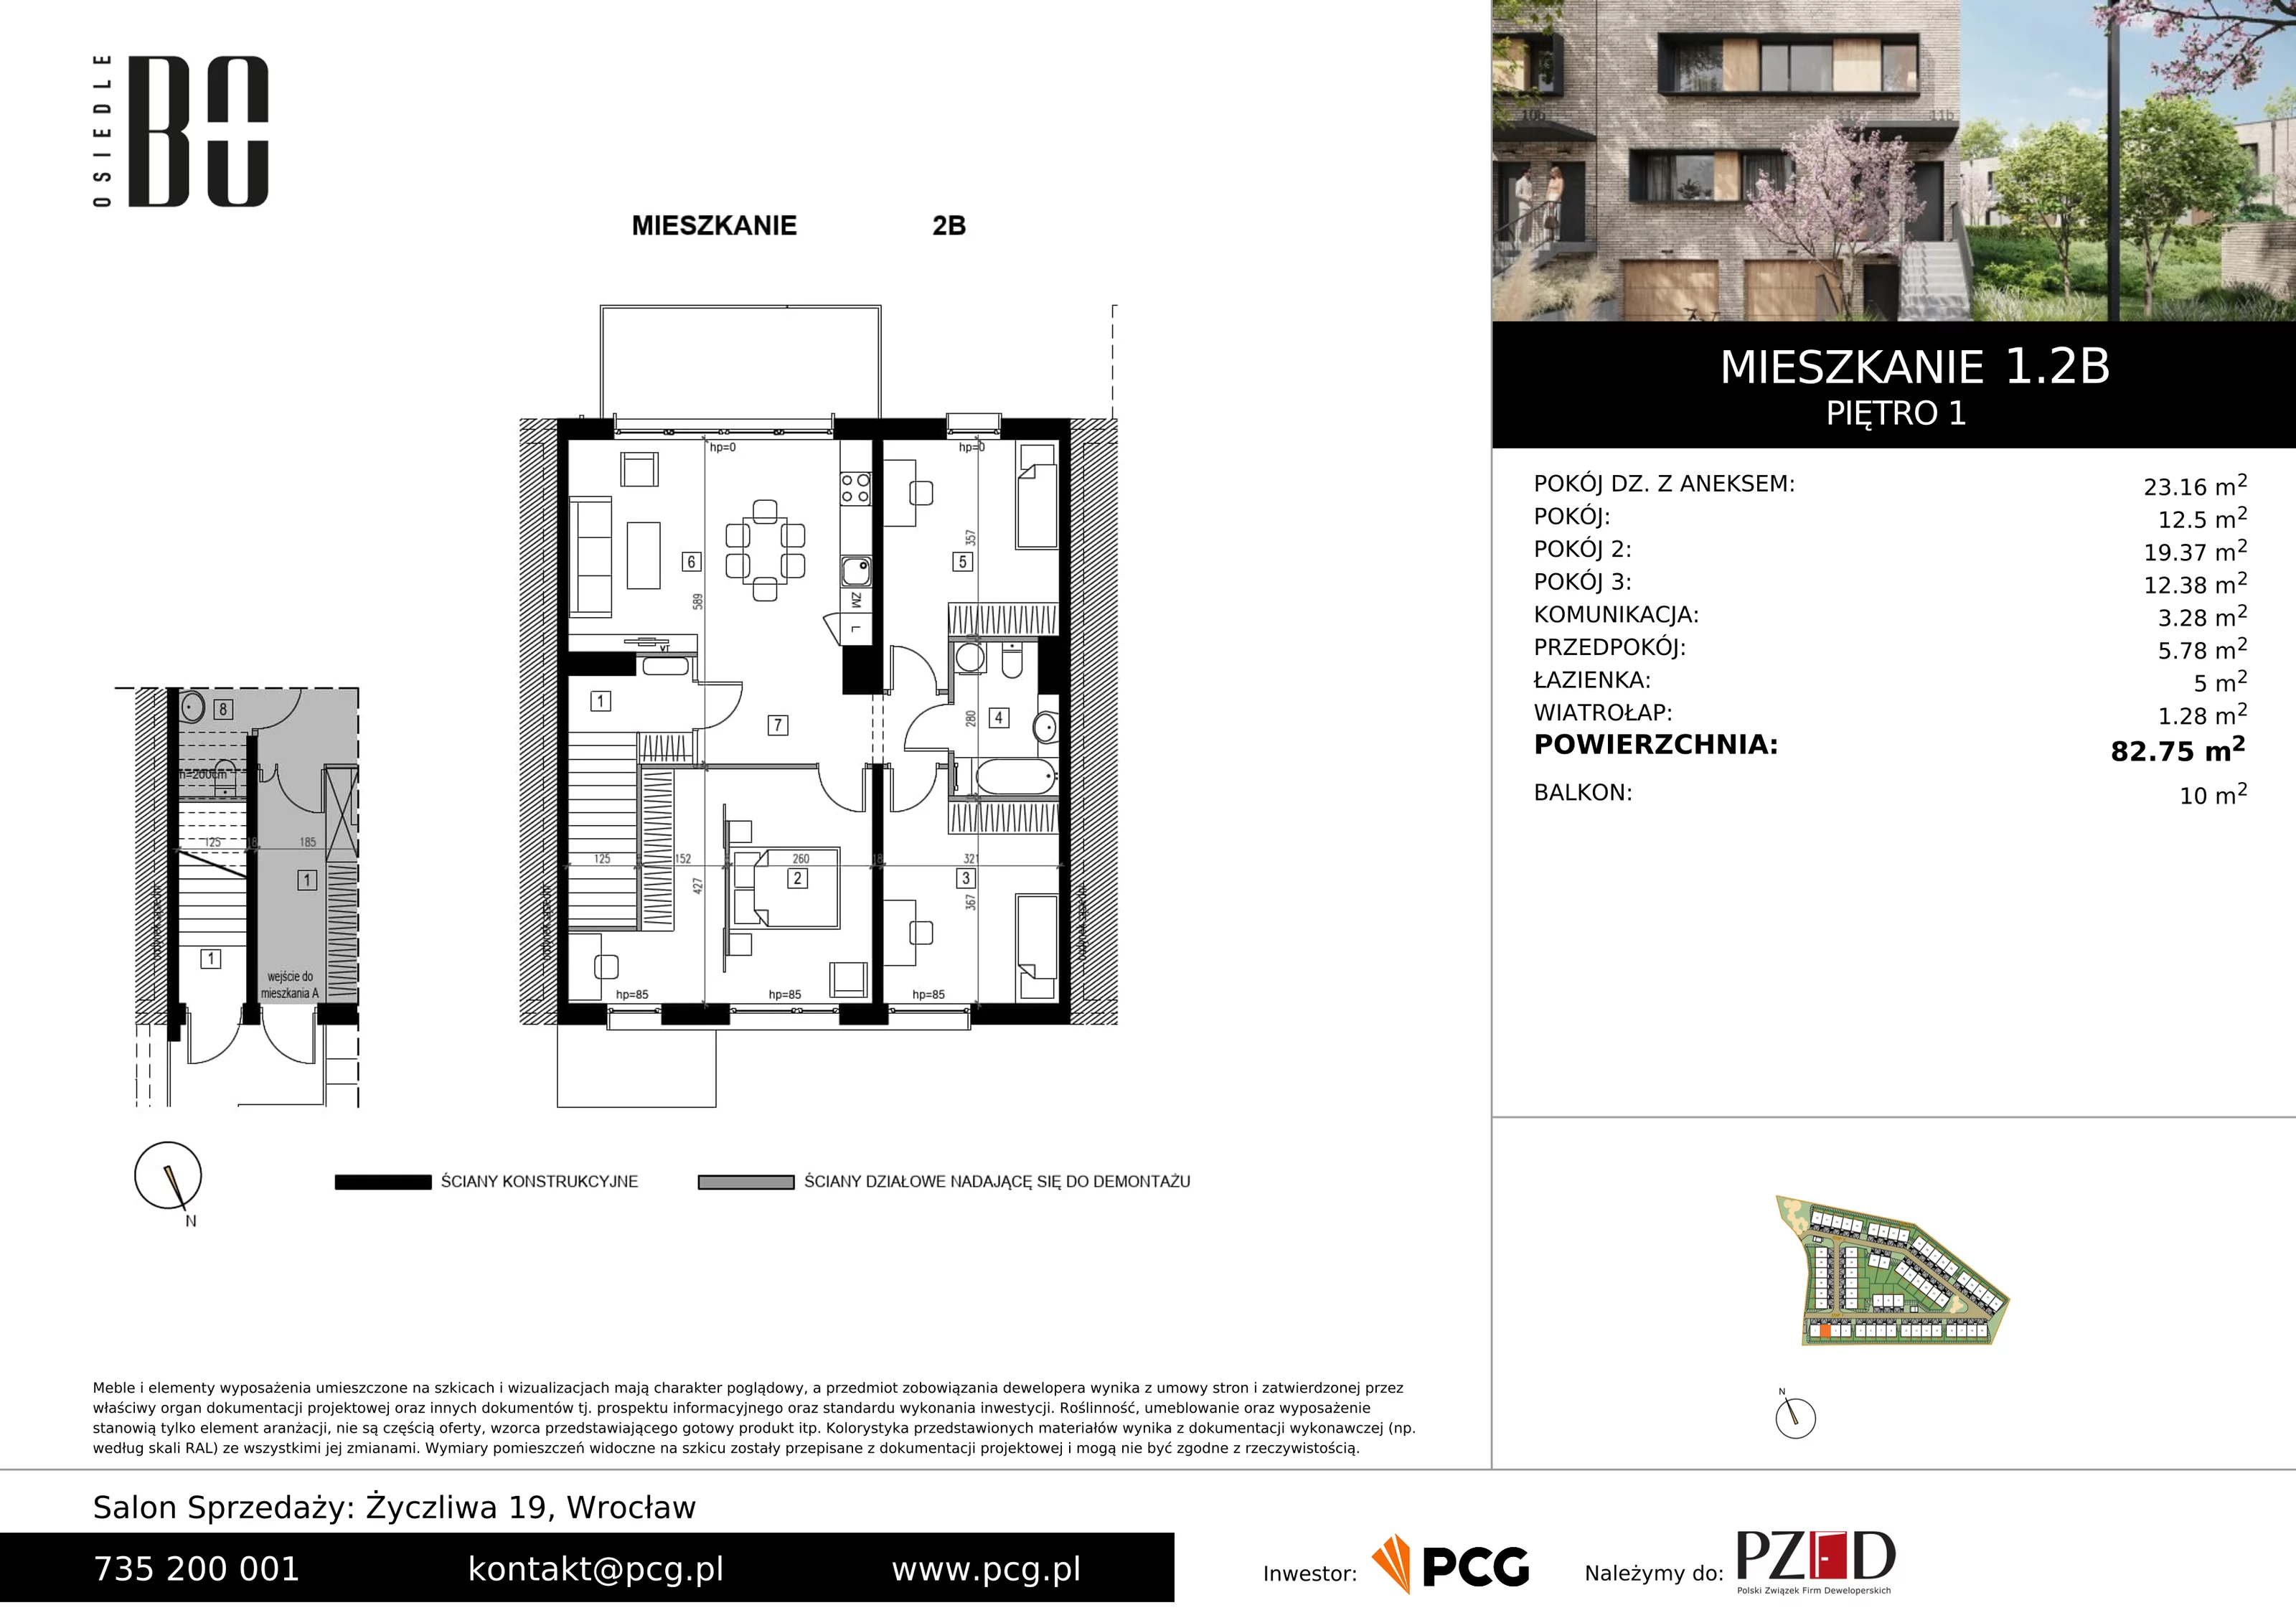 Apartament 82,75 m², piętro 1, oferta nr 1.2B, Osiedle BO, Wrocław, Kowale, ul. Bociana